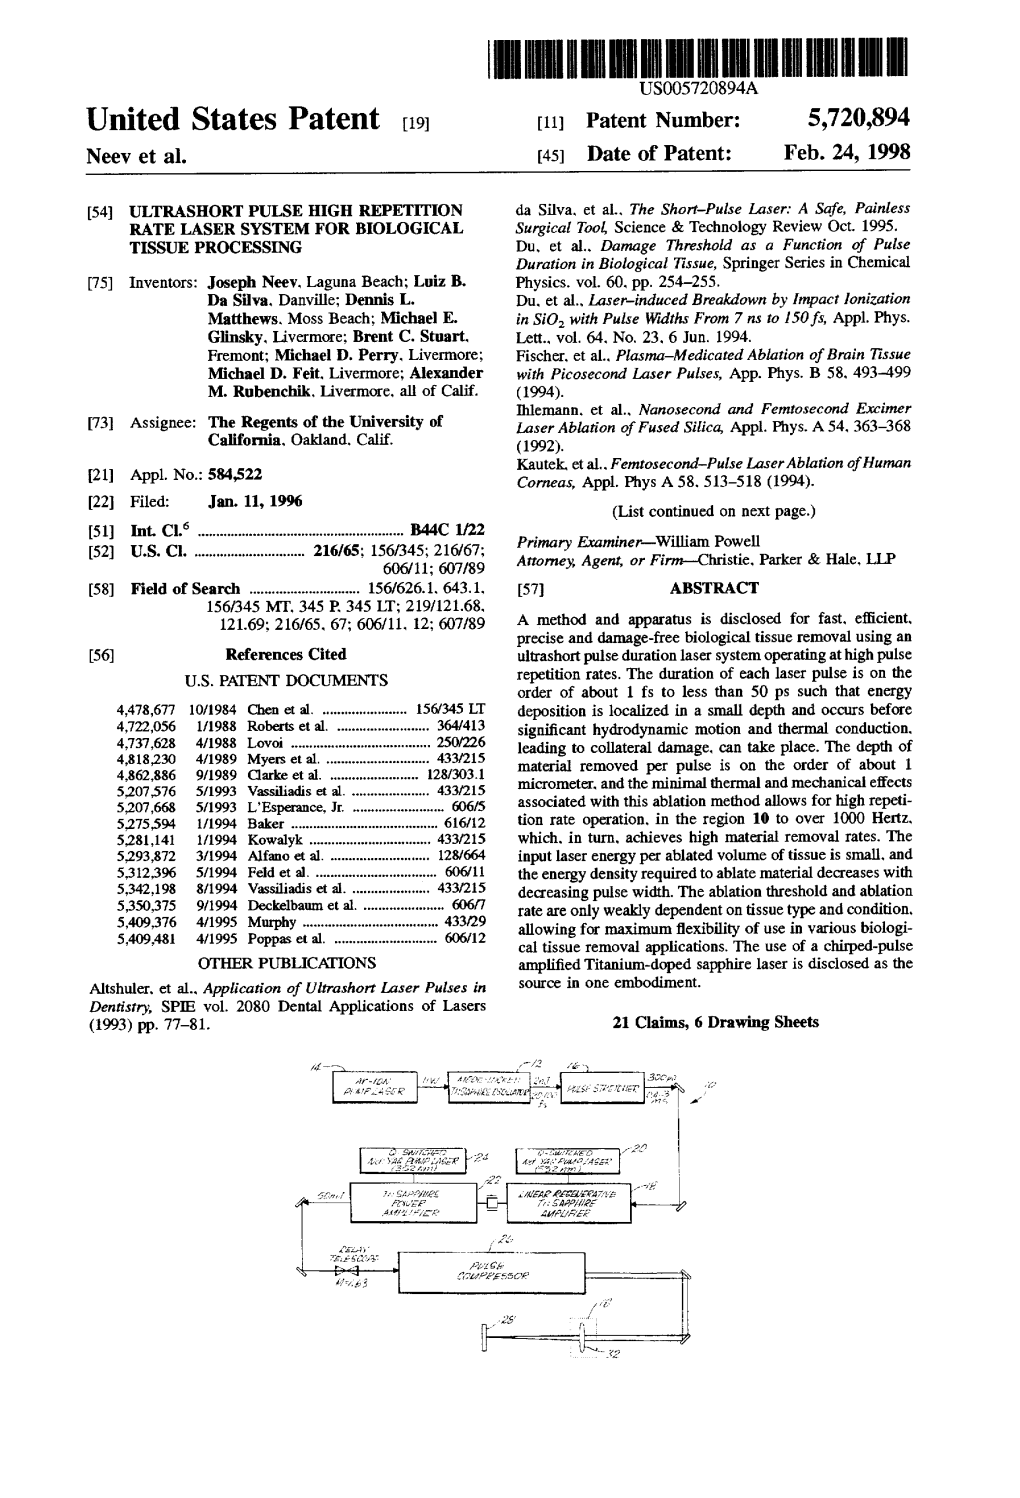 United States Patent (19) 11 Patent Number: 5,720,894 Neev Et Al